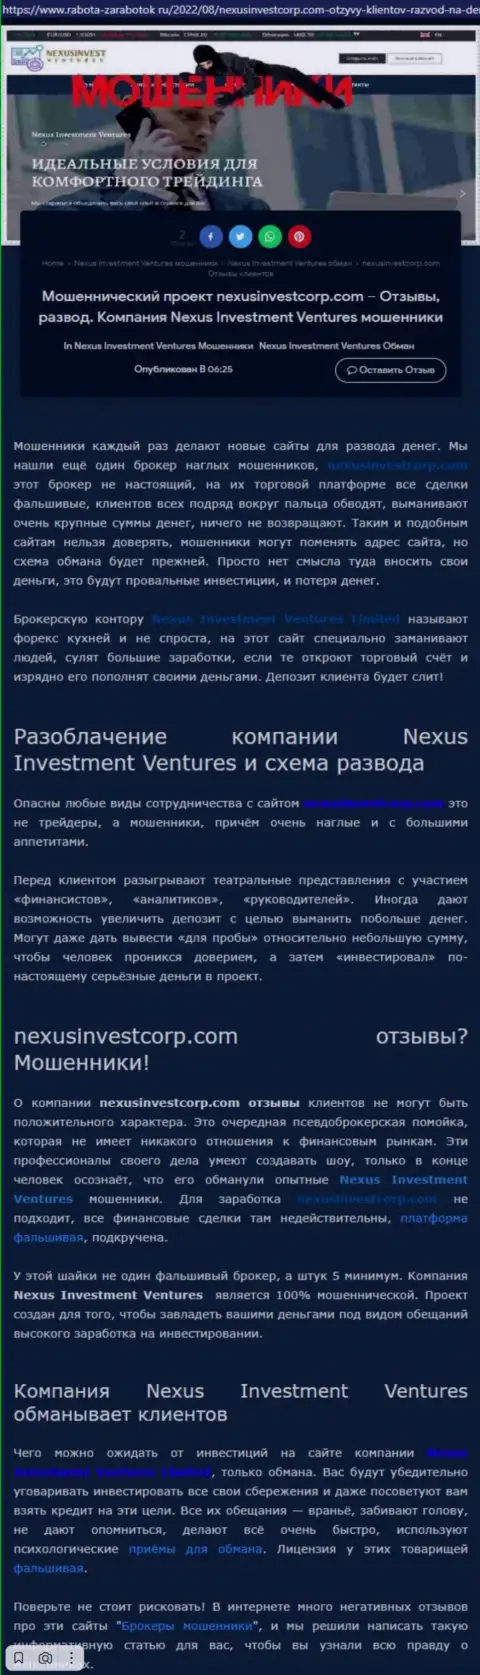 Если же нет желания стать очередной жертвой Nexus Invest, бегите от них как можно дальше (обзор неправомерных действий)